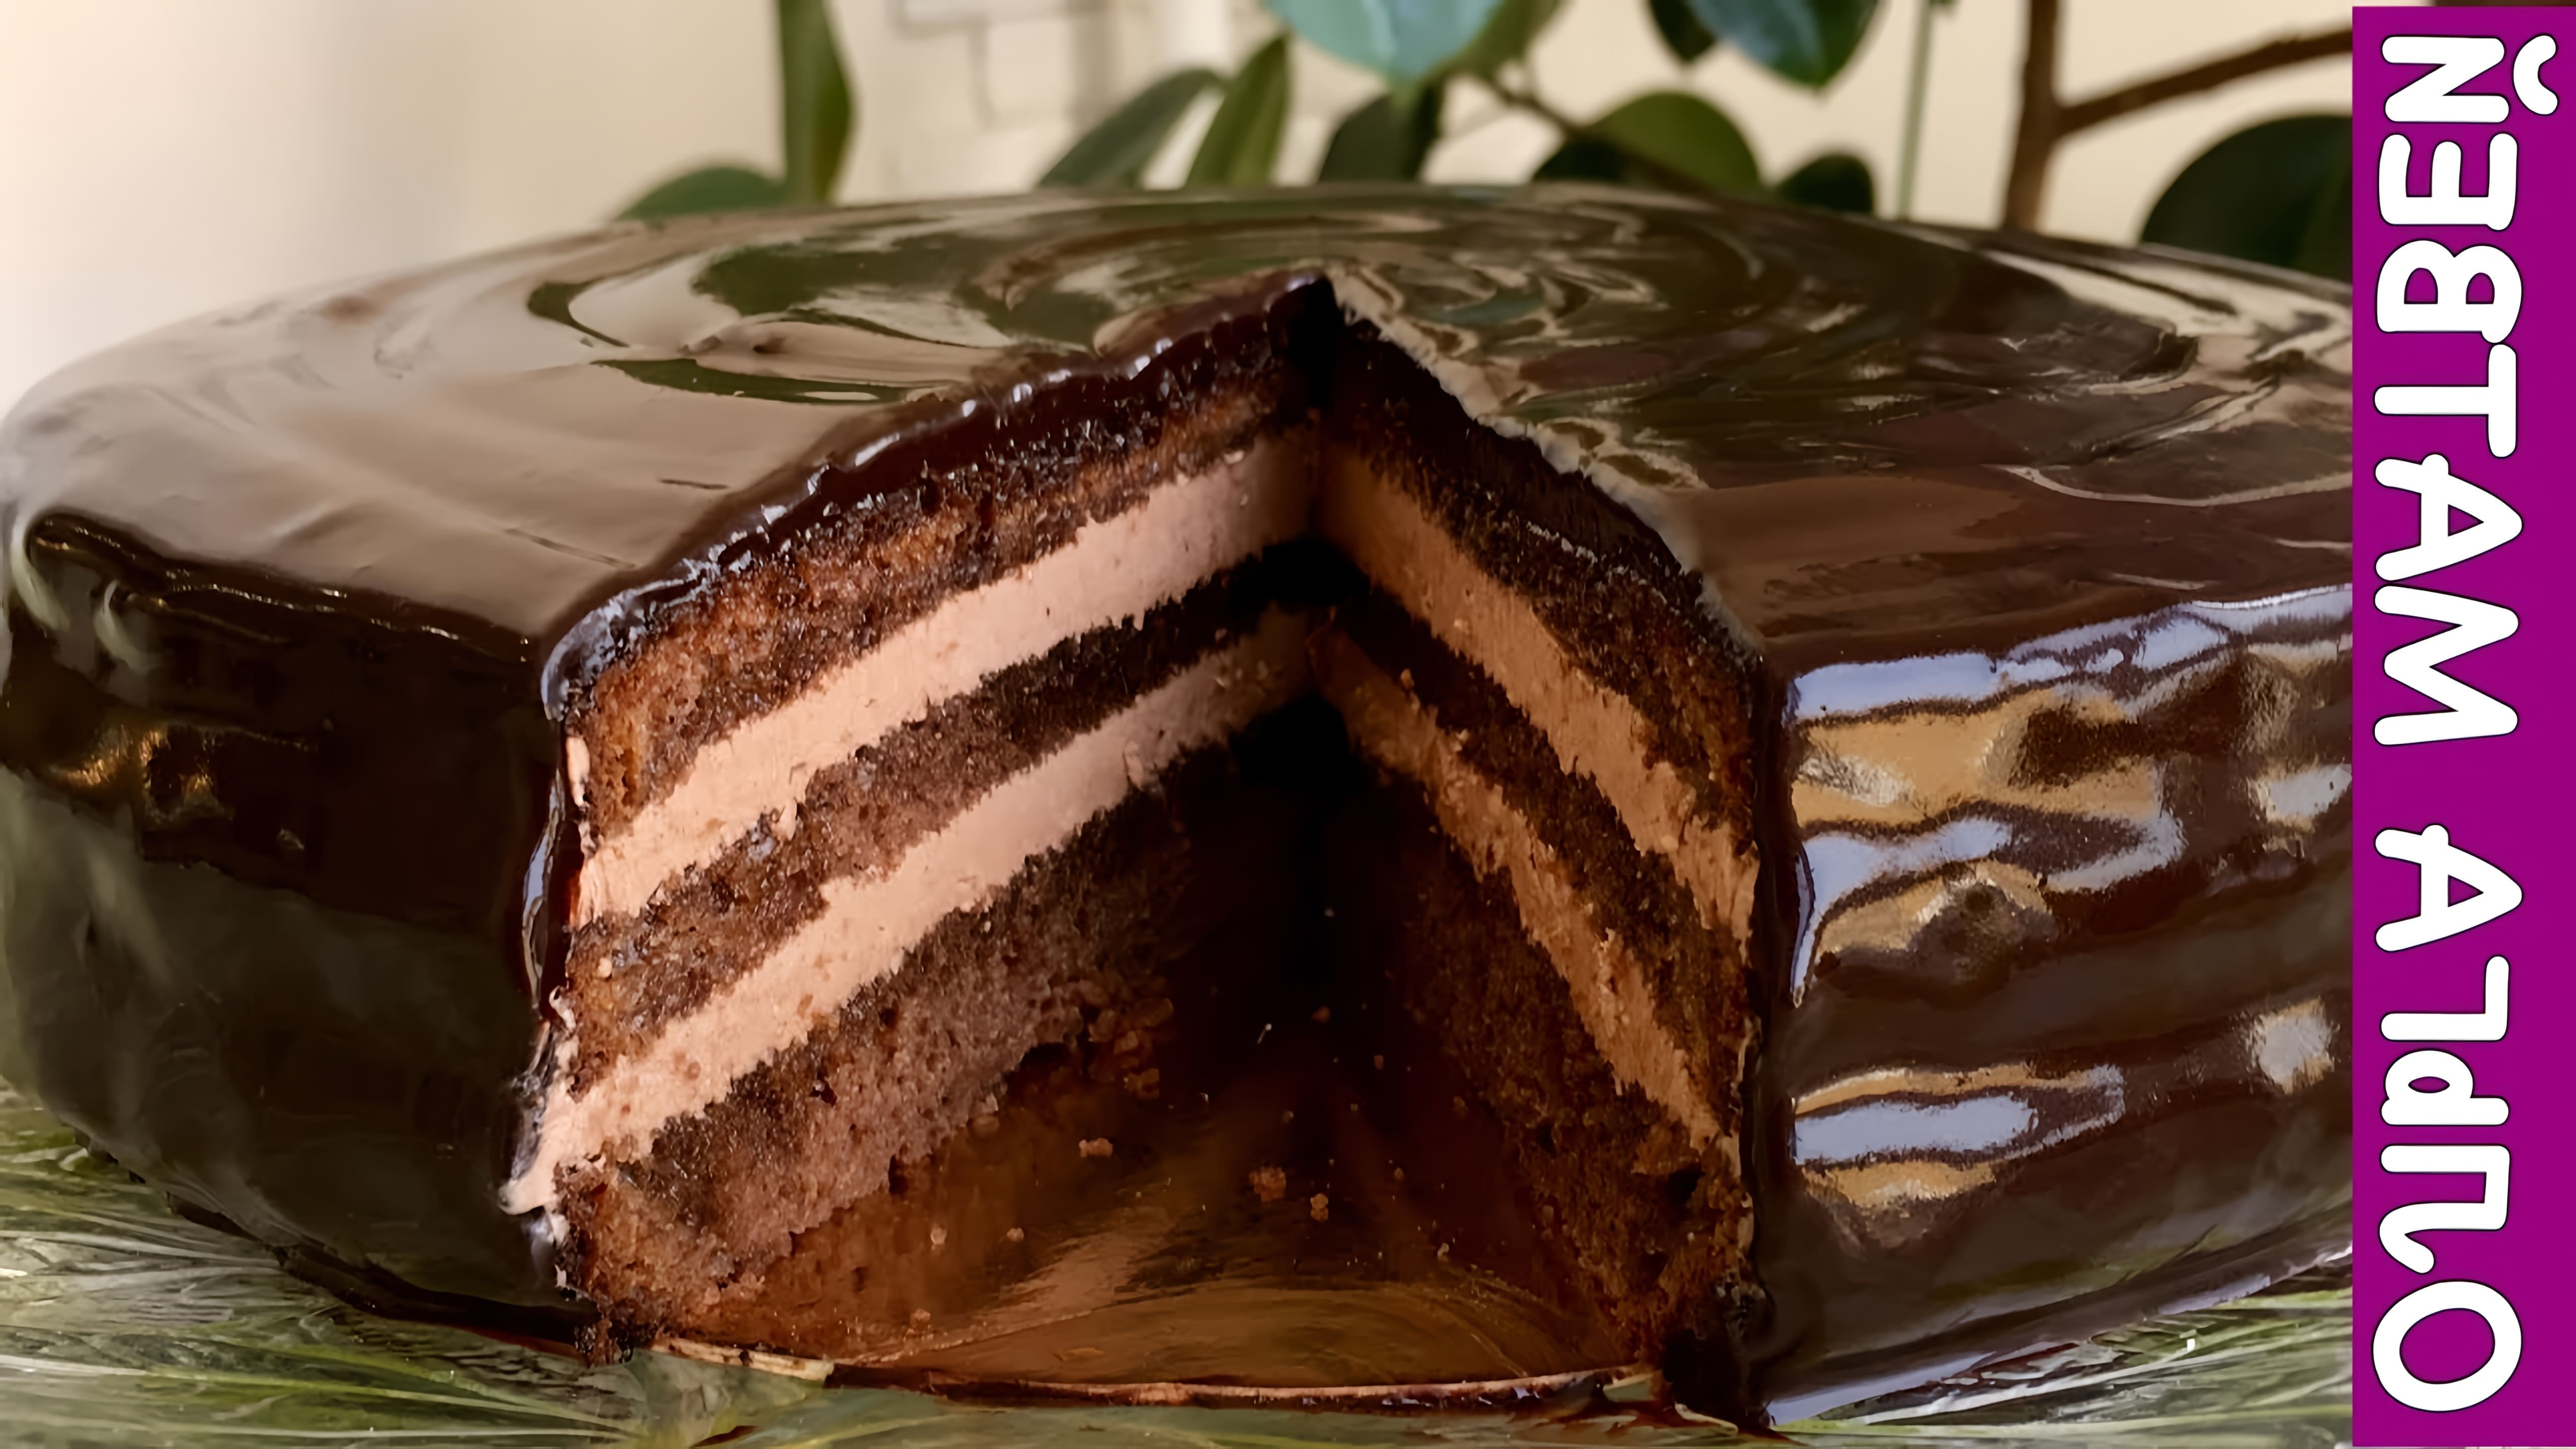 Видео рецепт традиционного чешского шоколадного торта под названием "Пражский" торт